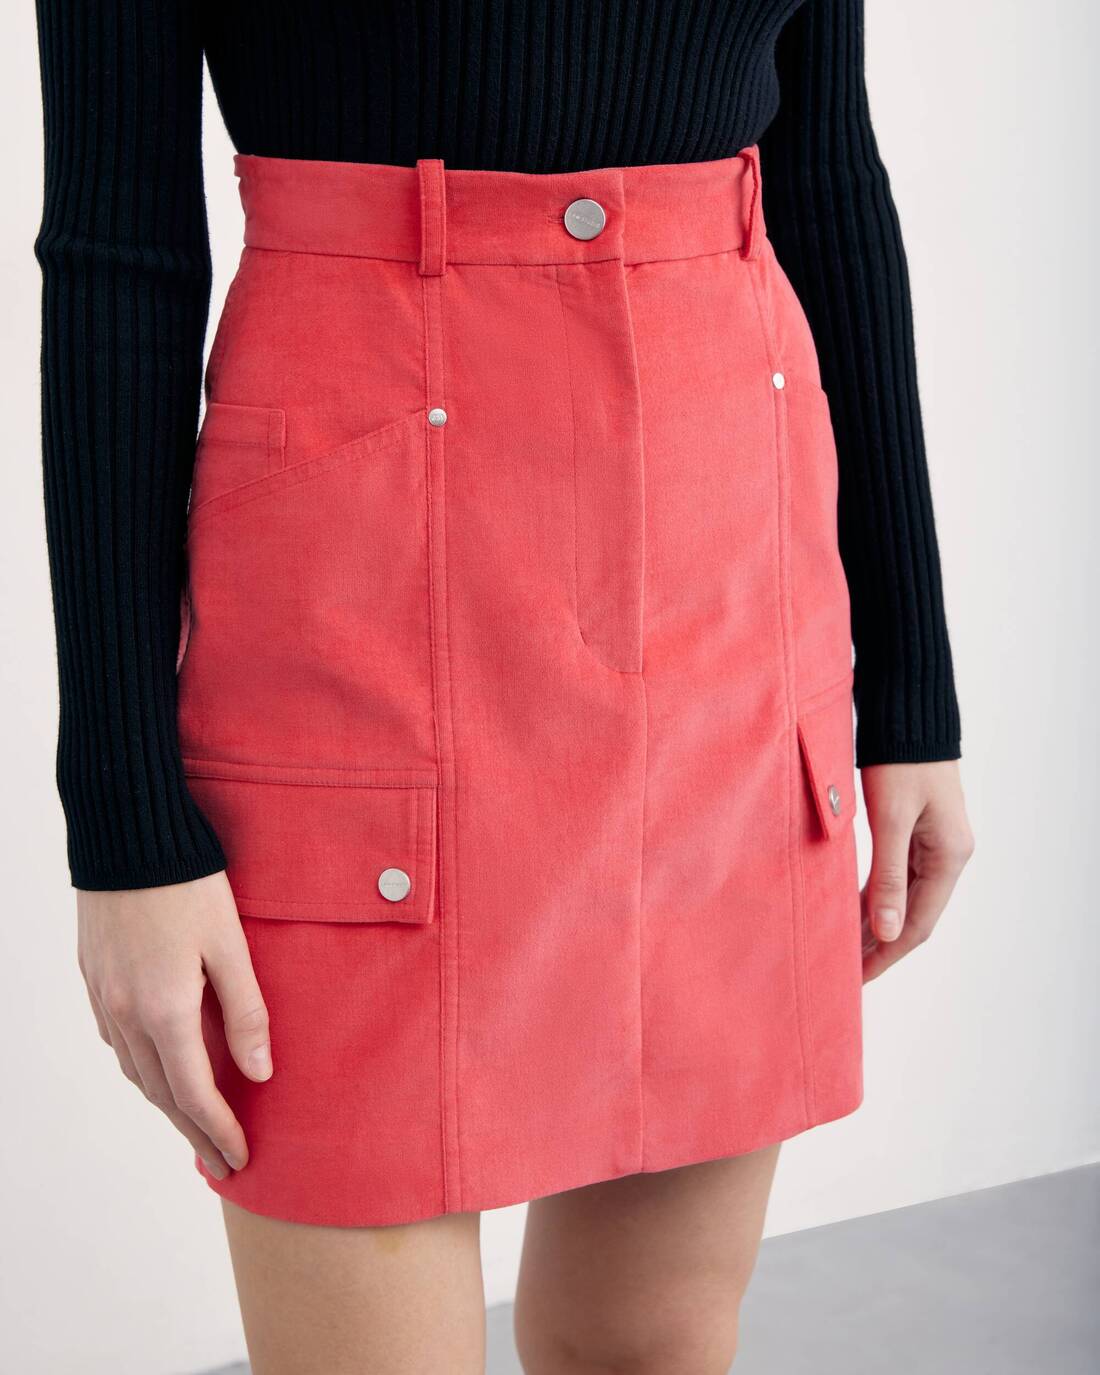 Microvelvet mini skirt